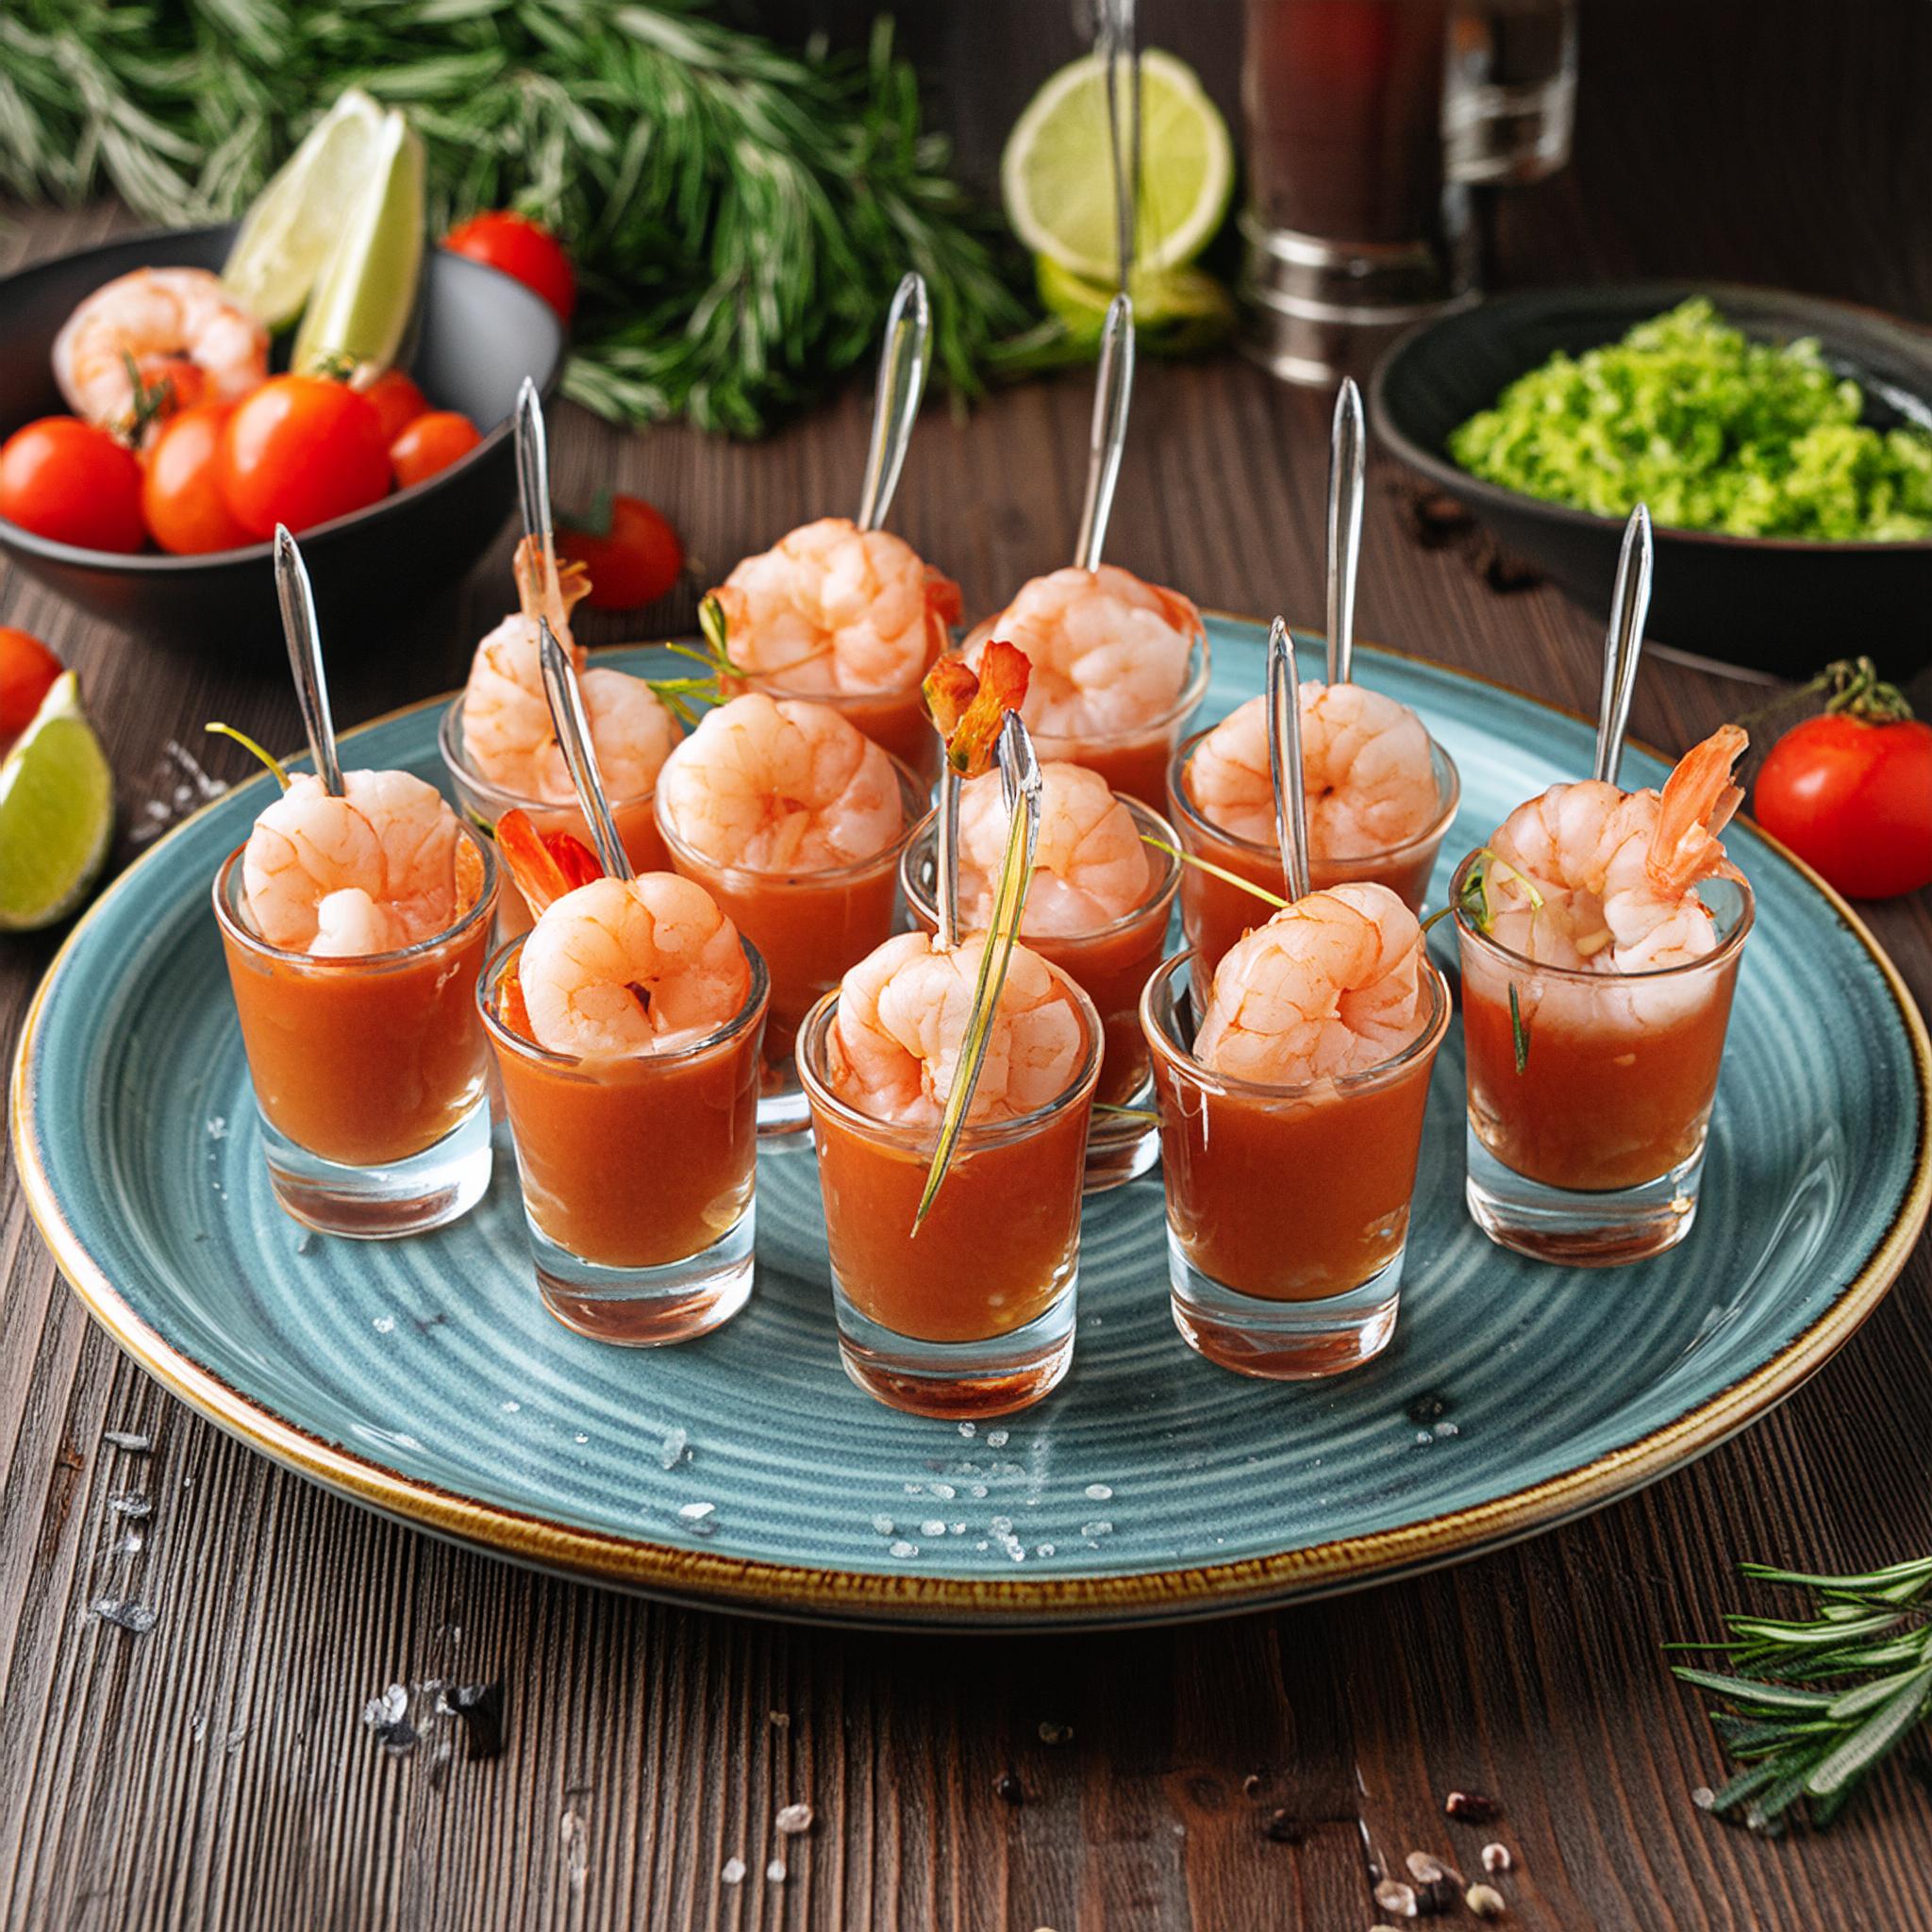 Broad Nosh Bagel Deli Catering Skewered Shrimp Cocktail